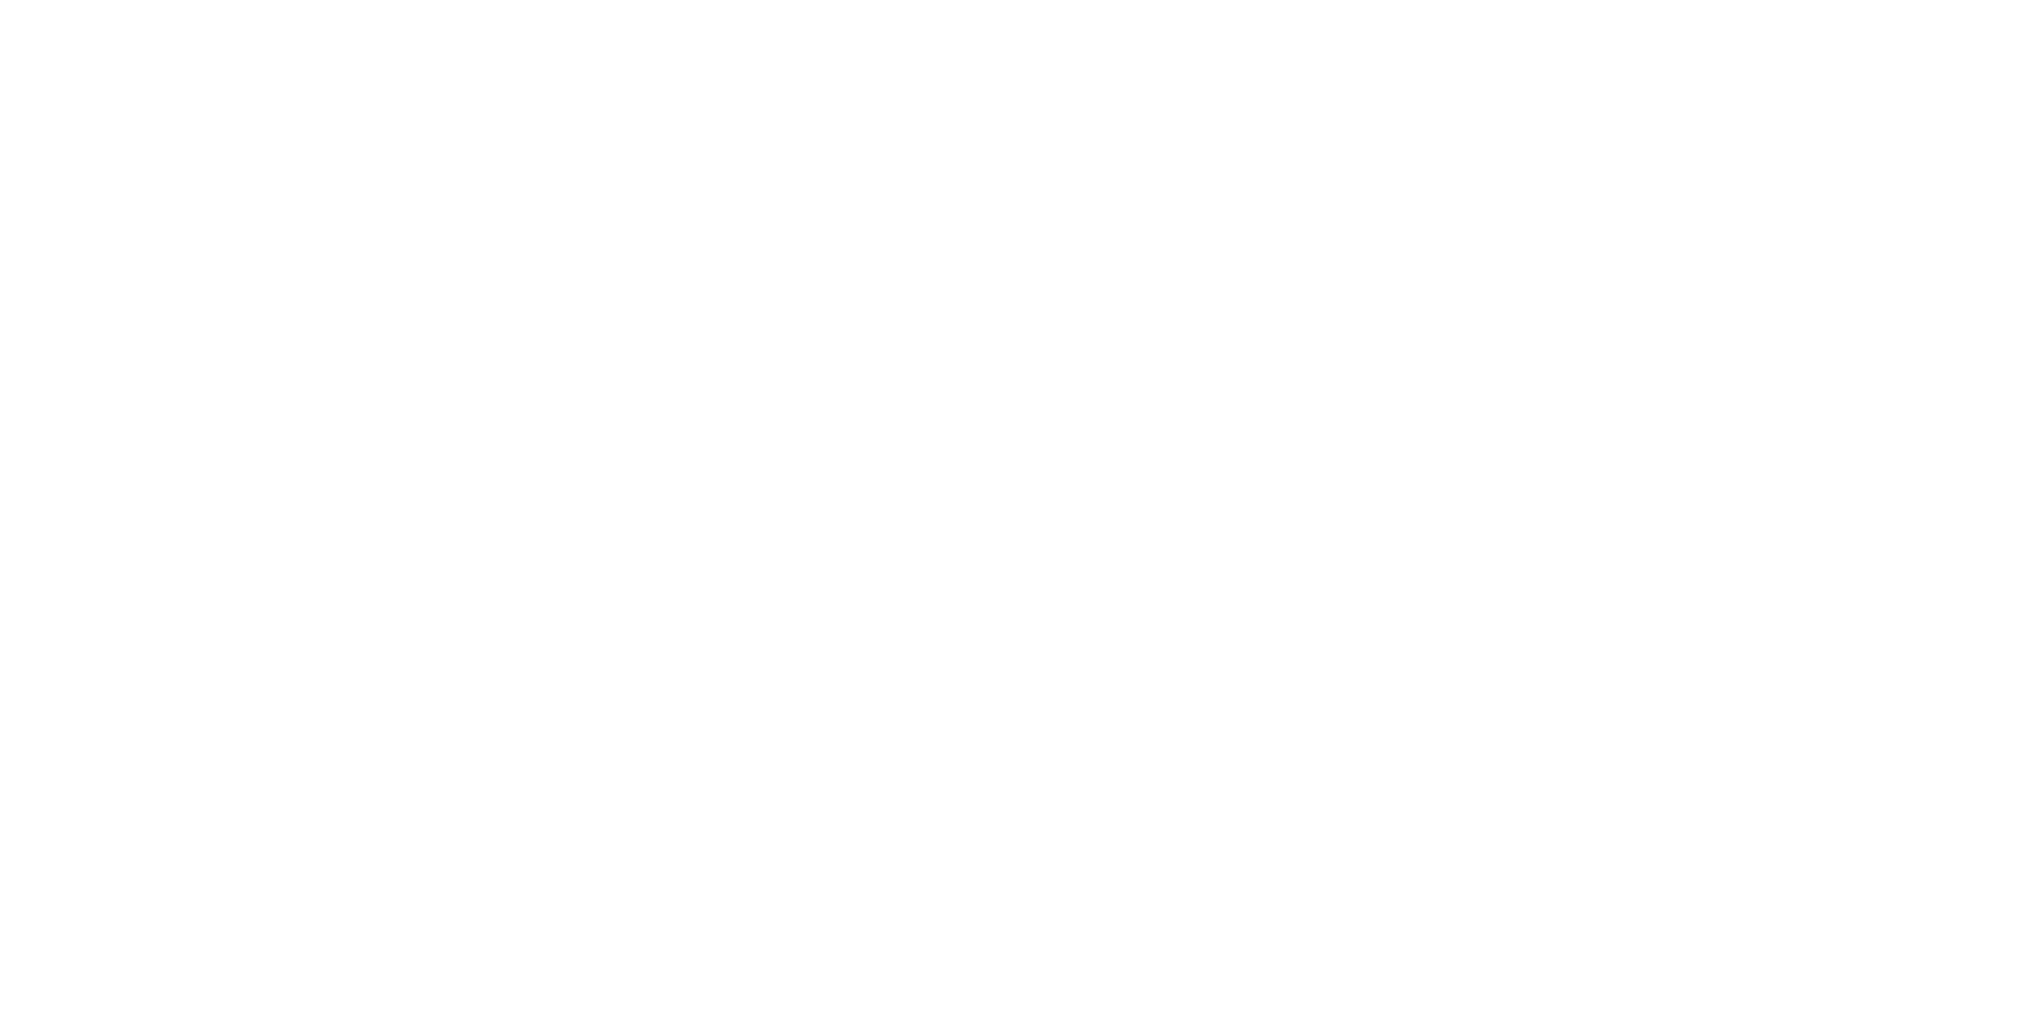 Tagosaku Mochiduki Signature